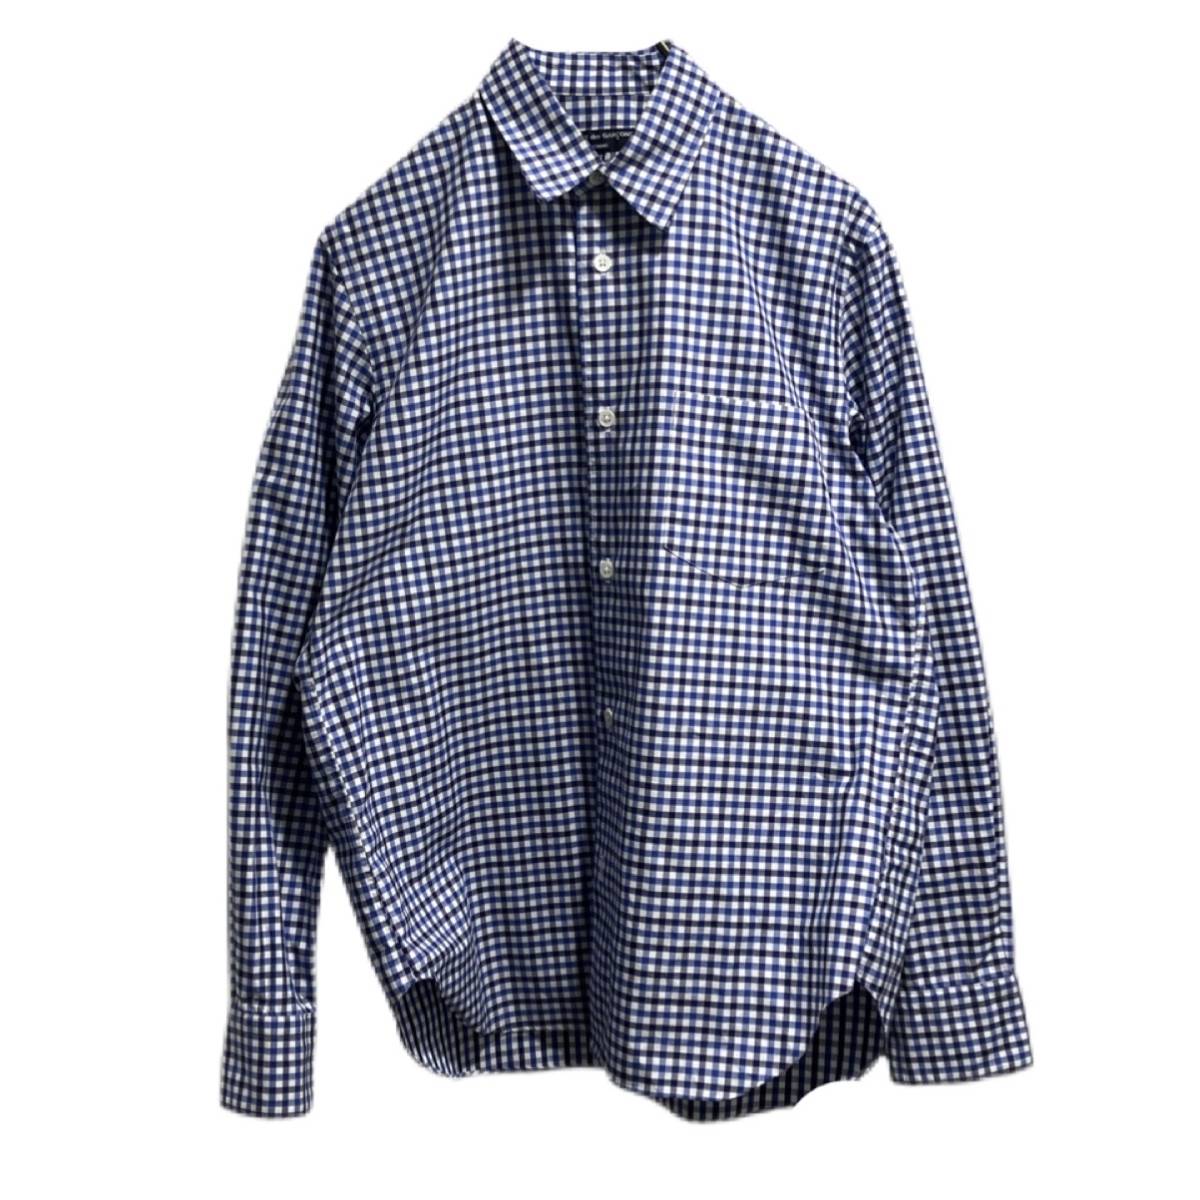 日本製 shirt Check HOMME GARCONS des COMME 18aw ギンガムチェック長袖シャツ コムデギャルソン XSサイズ XSサイズ以下